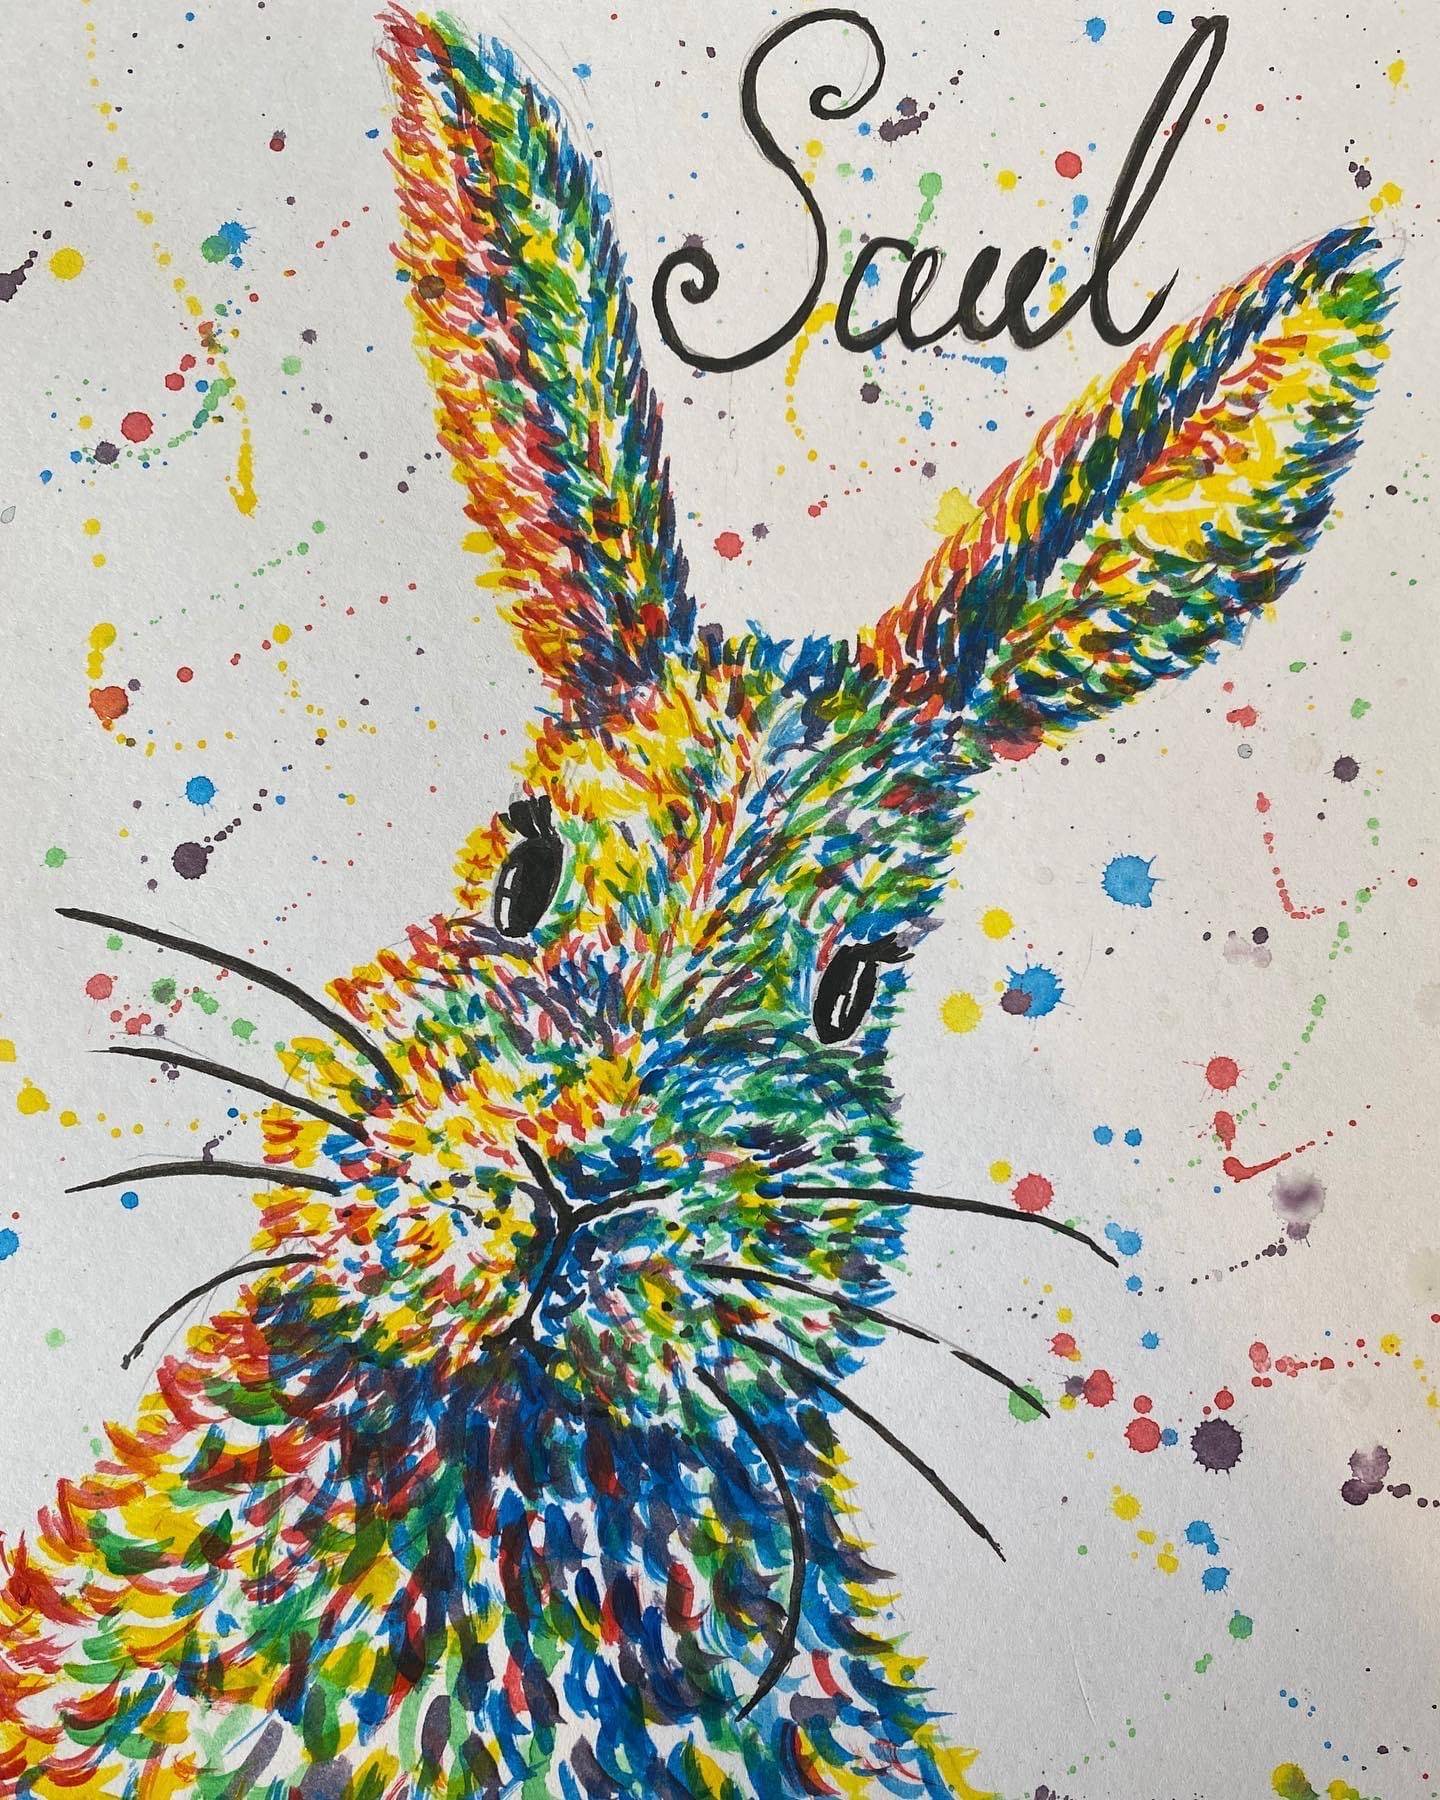 A colourful Bunny Rabbit for Saul